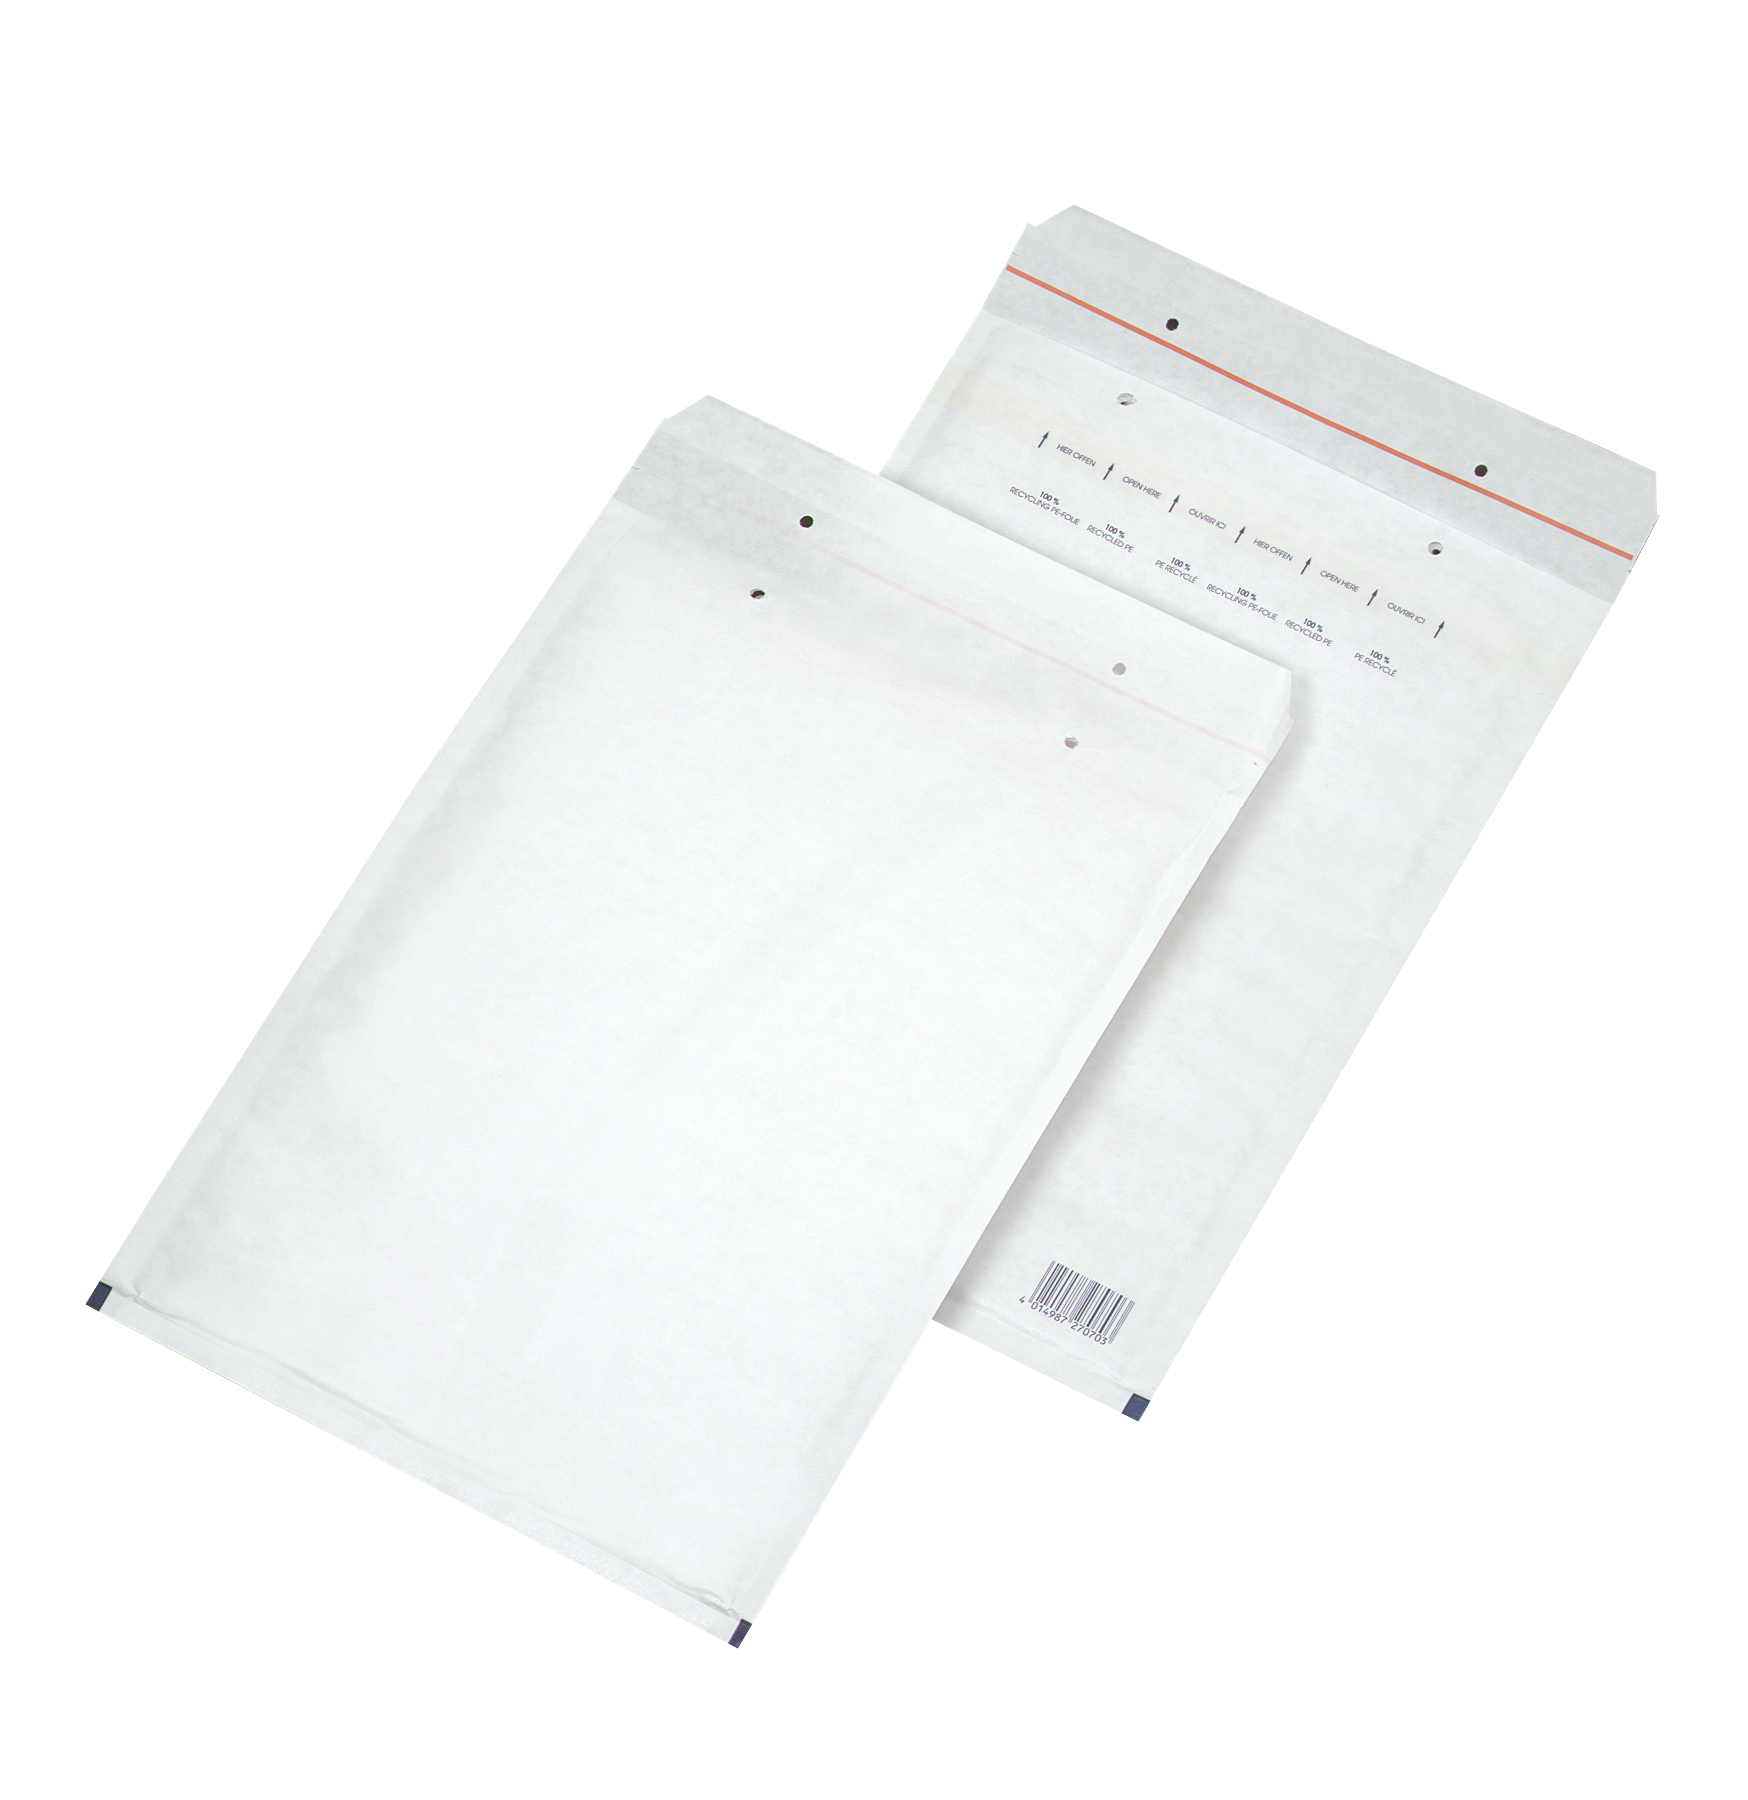 2FVAF000107 100 Briefumschläge mit Luftpolster für DIN A4 weiß 